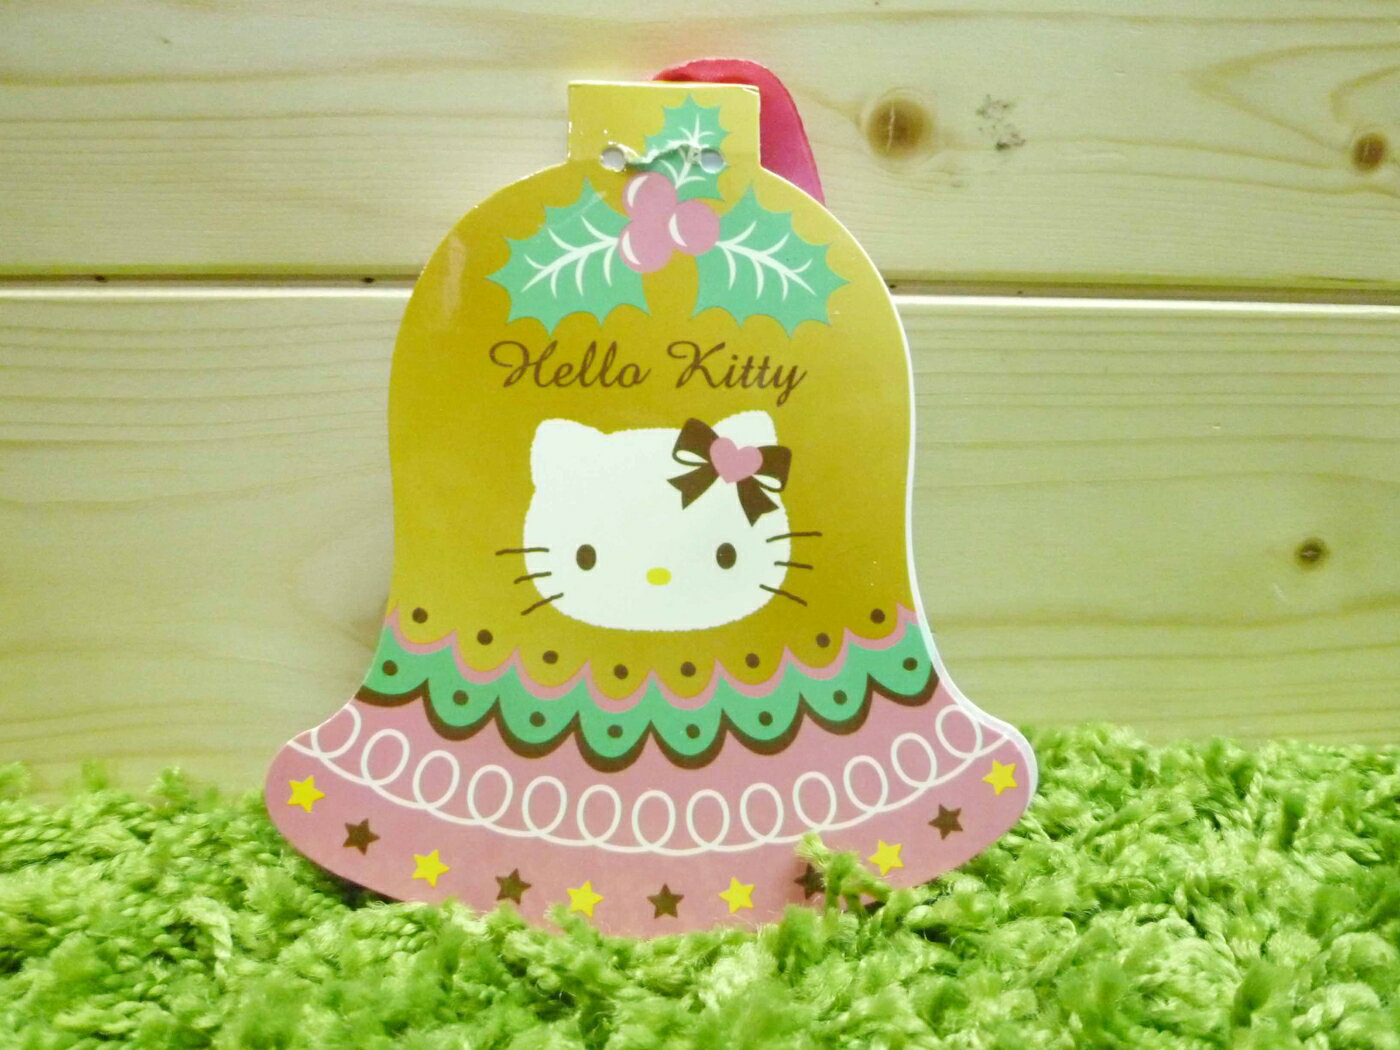 【震撼精品百貨】Hello Kitty 凱蒂貓 造型便條紙-鐘造型【共1款】 震撼日式精品百貨